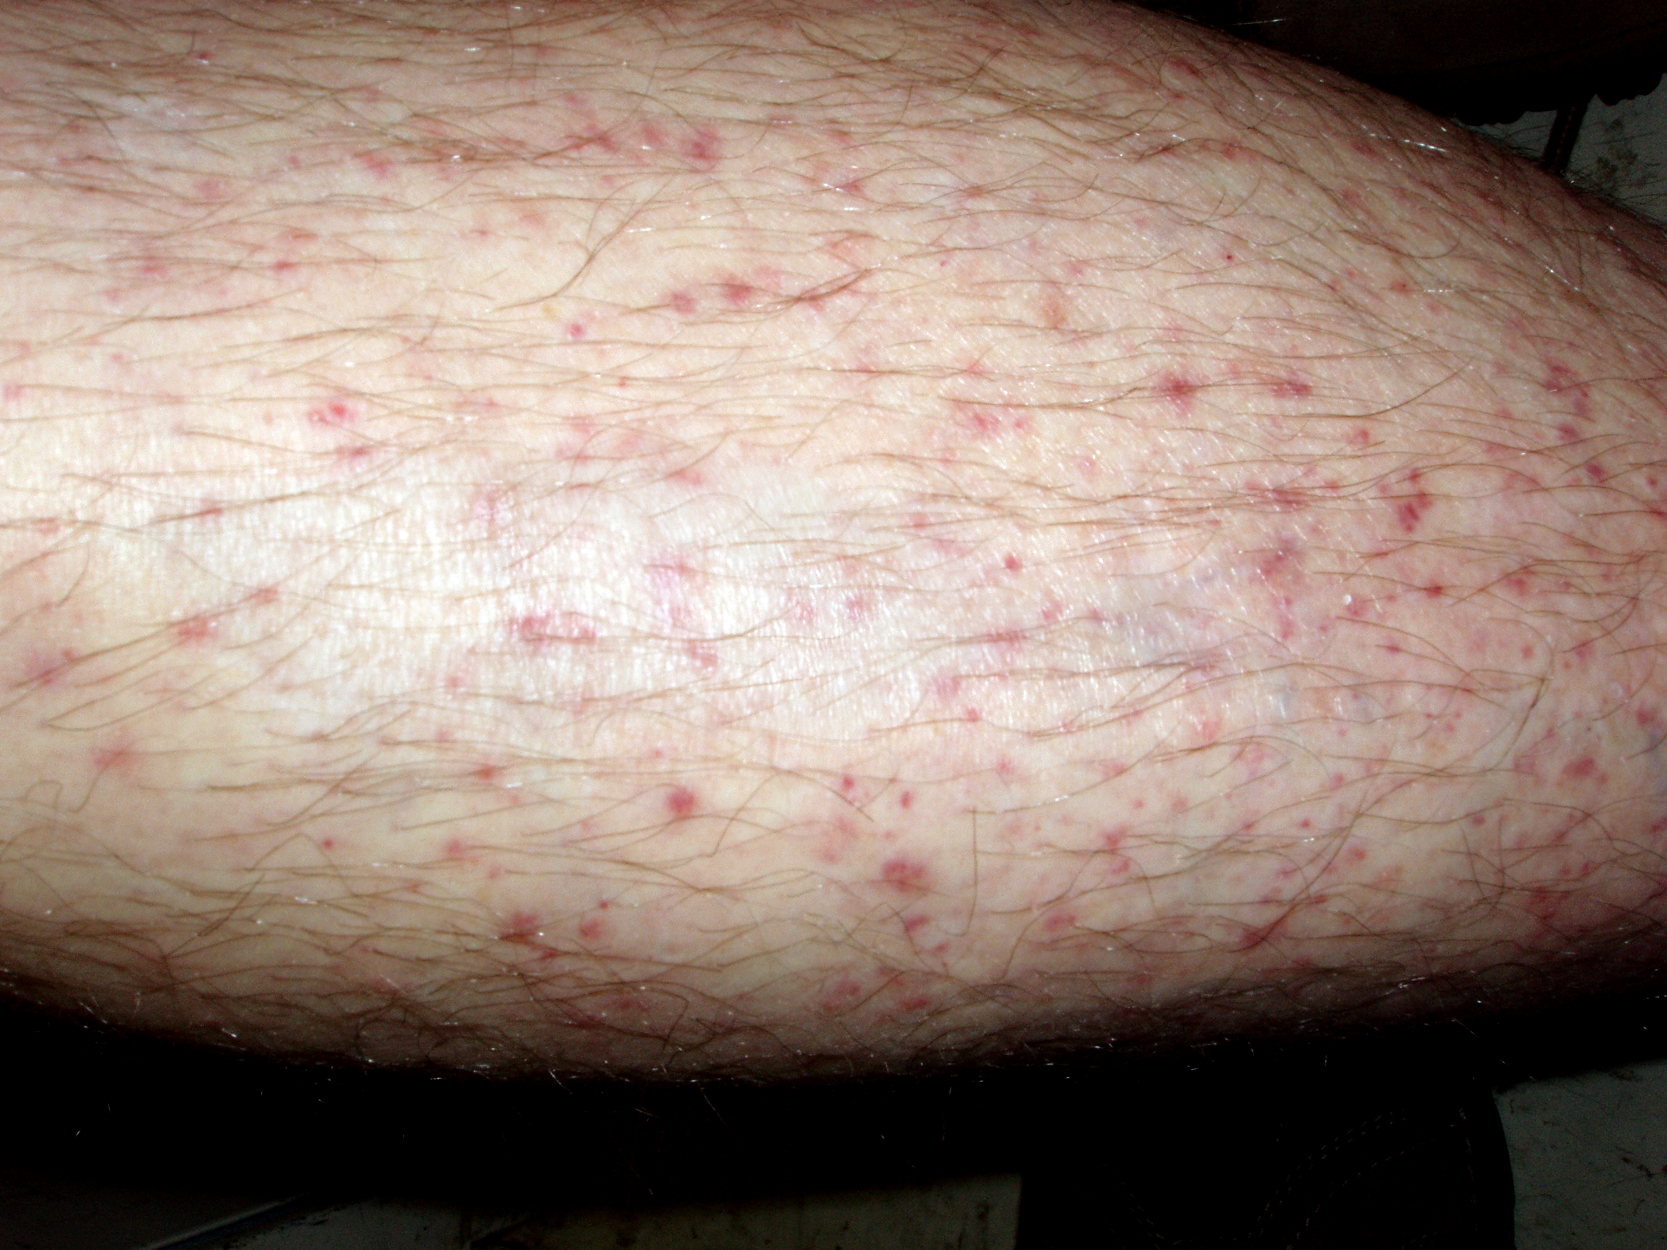 File:Skin vasculitis7.jpg